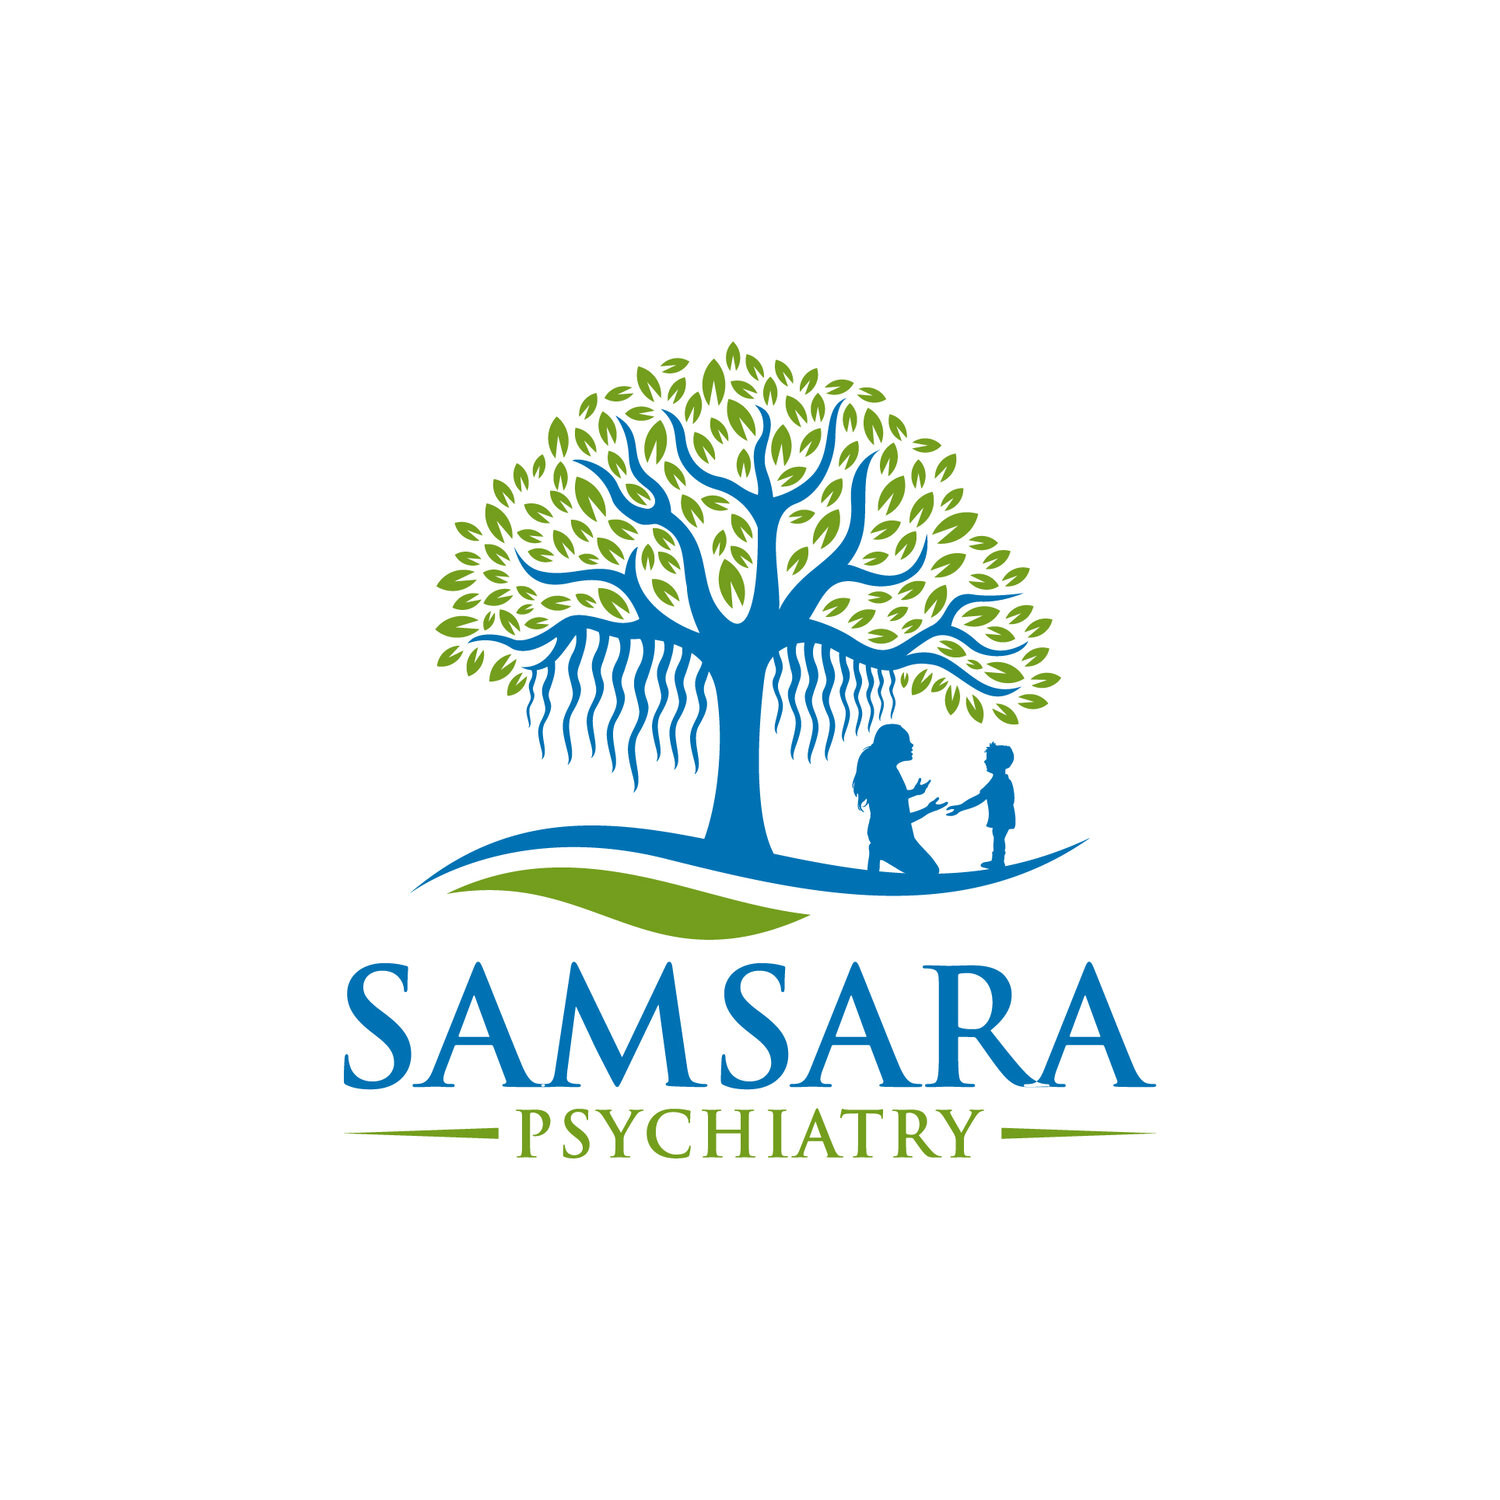 Samsara Psychiatry